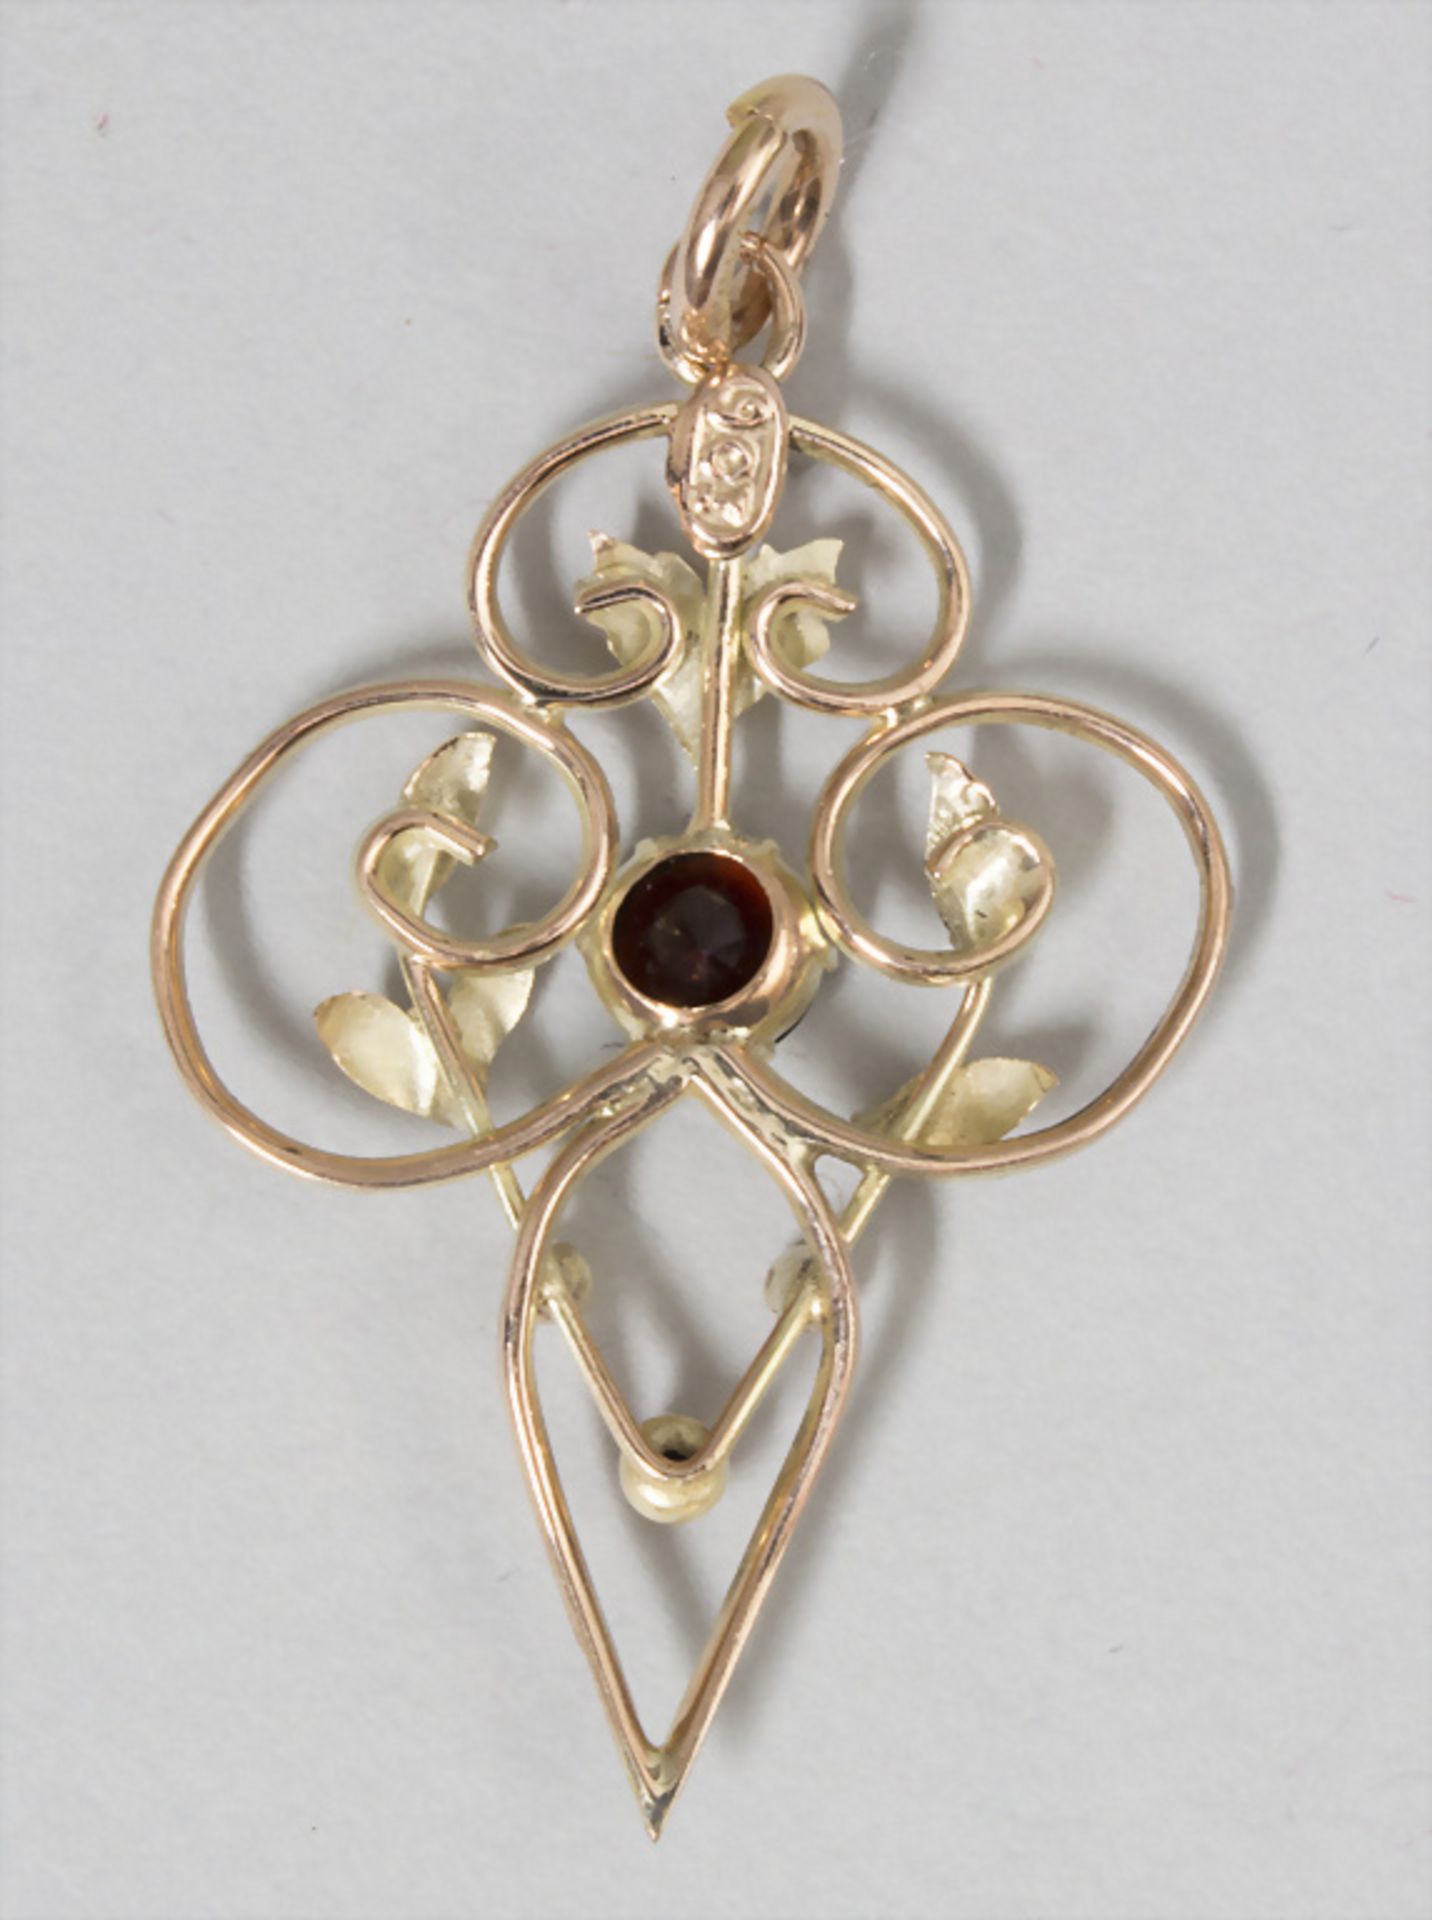 Jugendstil Anhänger / An Art Nouveau pendant, England, um 1900 - Image 2 of 2